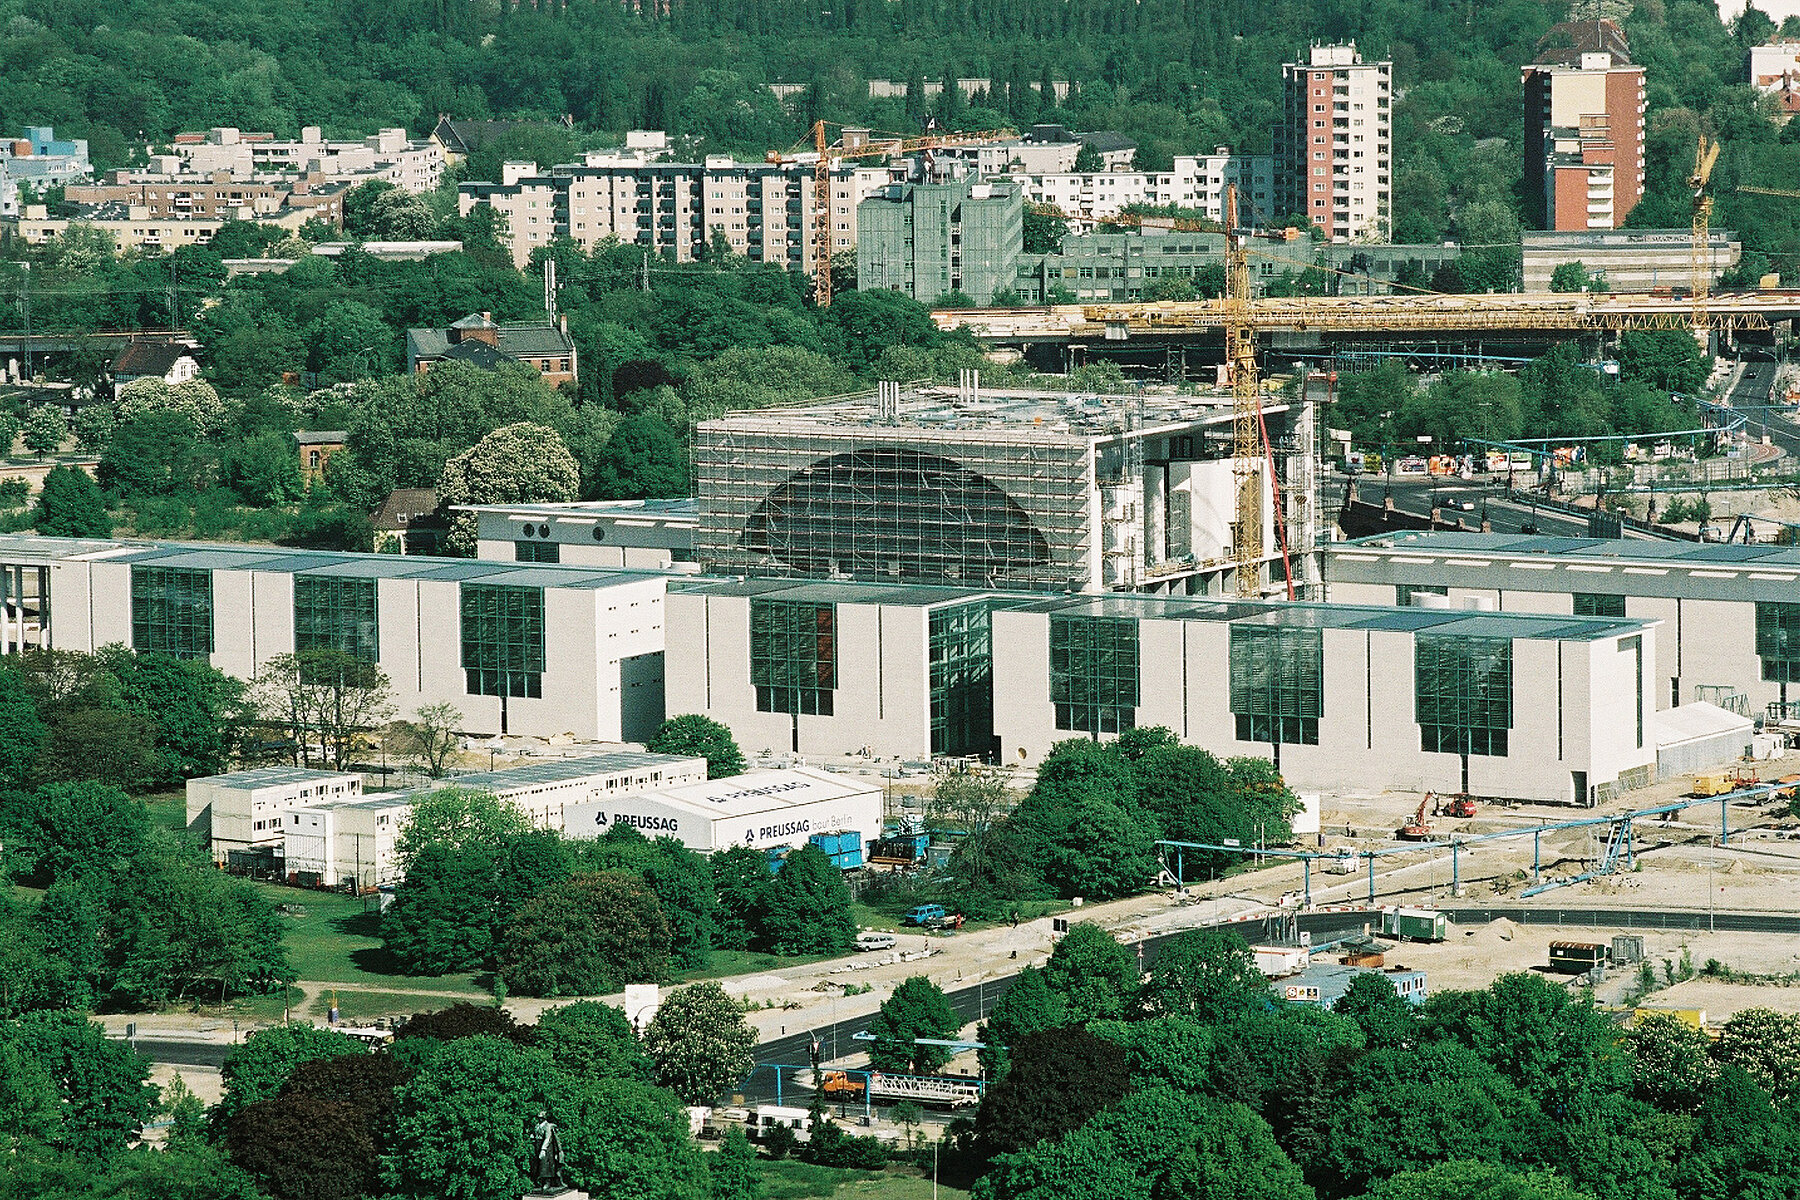 Das im Bau befindliche Bundeskanzleramt im Berliner Regierungsviertel. Der Haupttrakt des Gebäudes ist eingerüstet, daneben steht ein Kran.